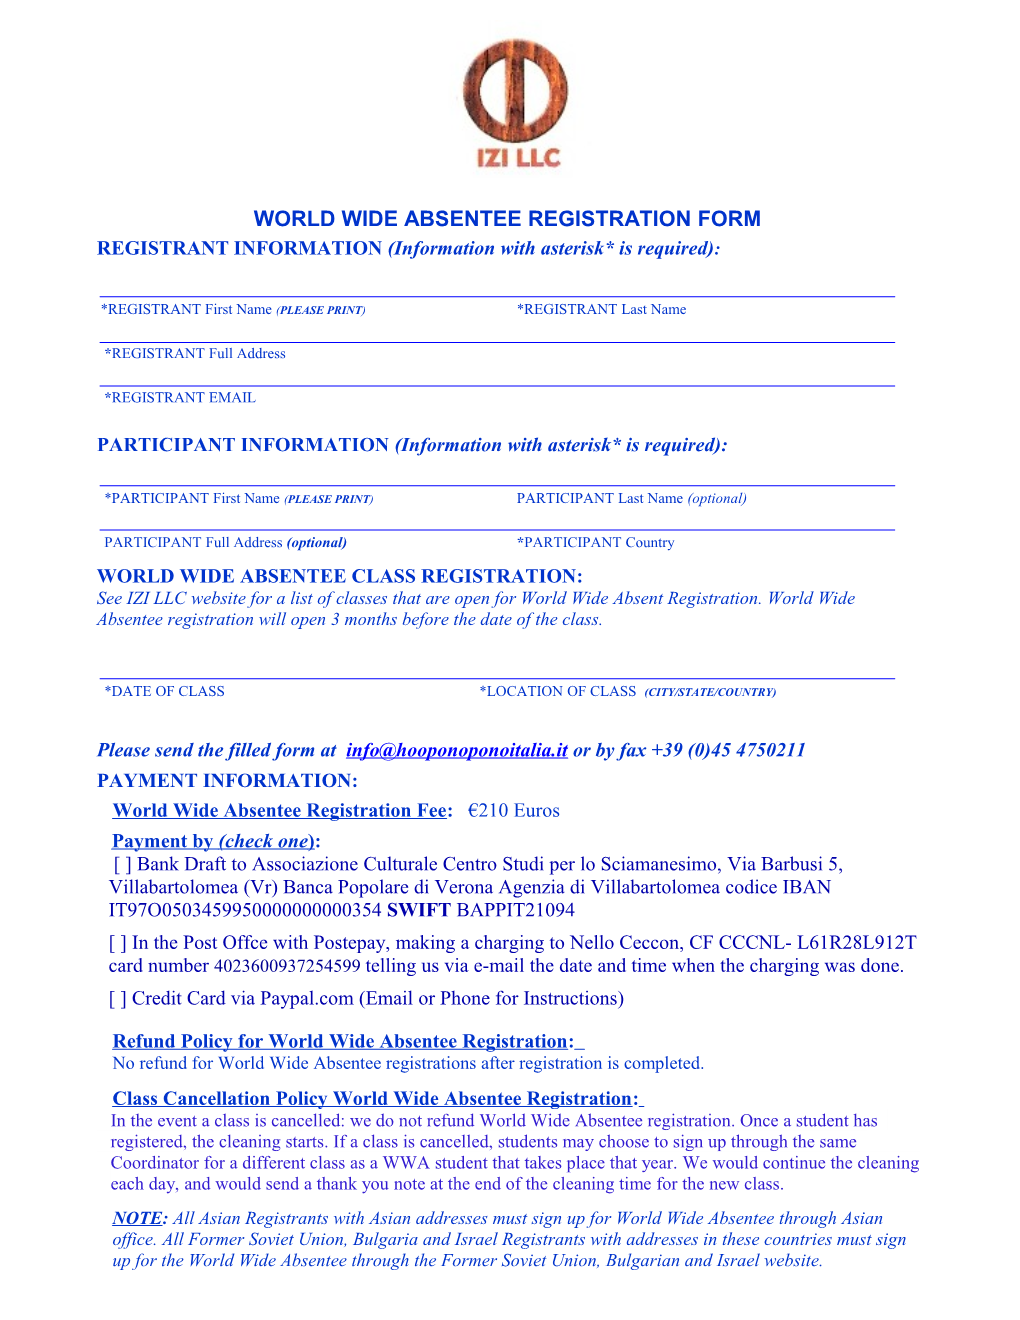 WWA Registration Form